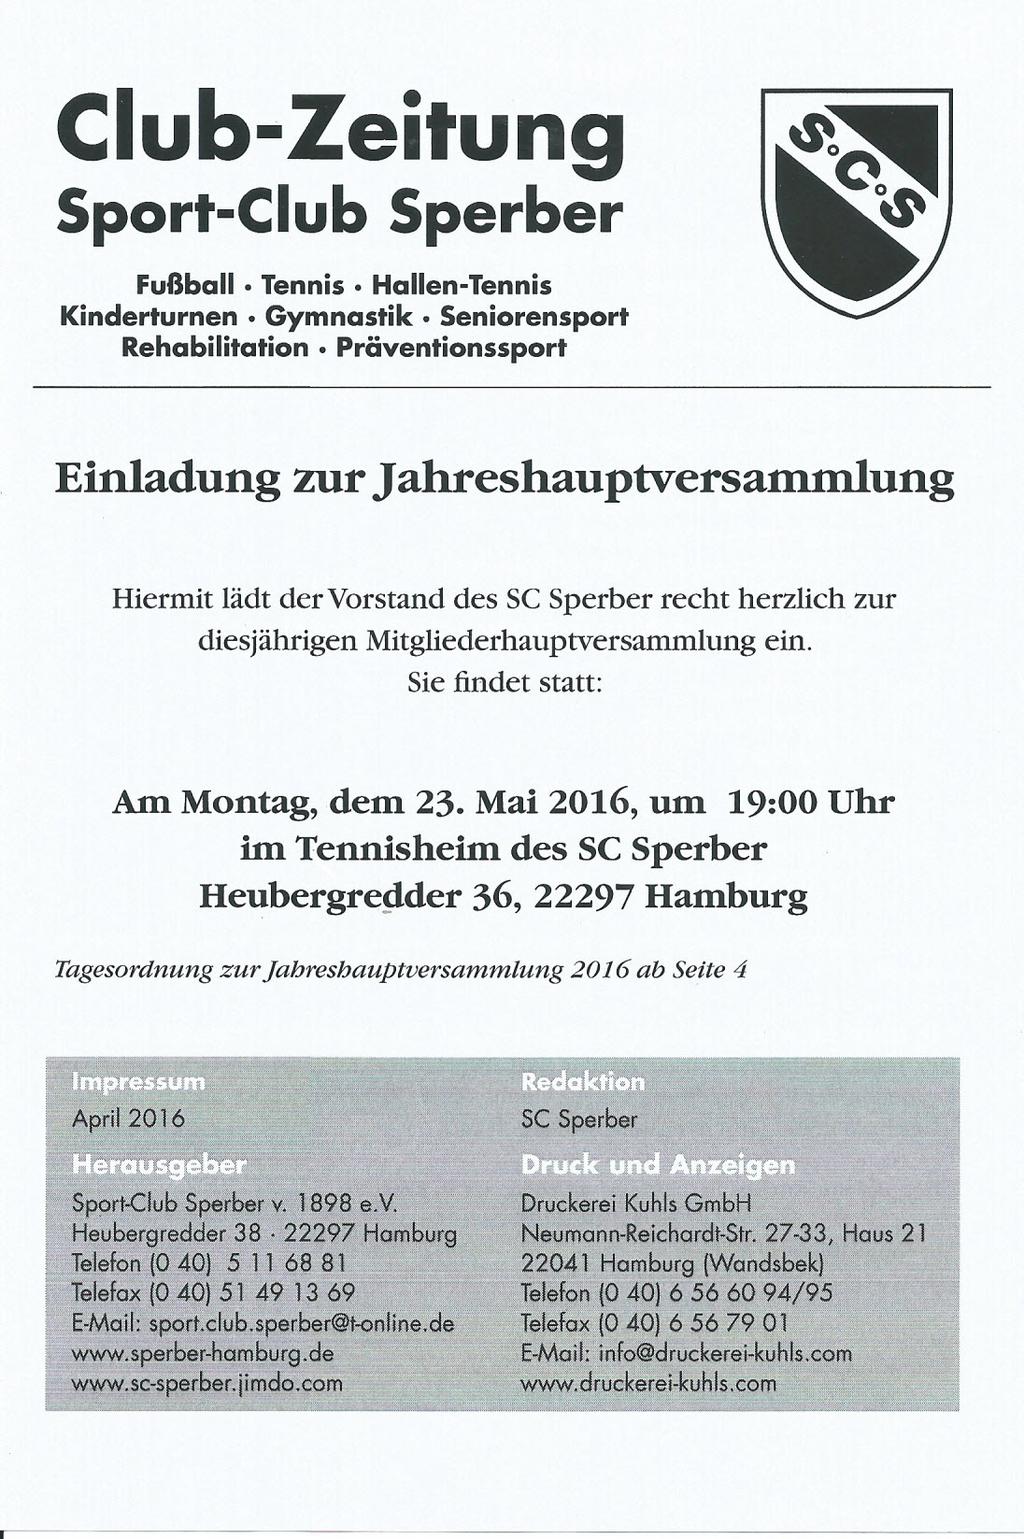 Club-Zeitung Sport-Club Sperber Fußball. Tennis Hallen-Tennis Kinderturnen Gymnastik.